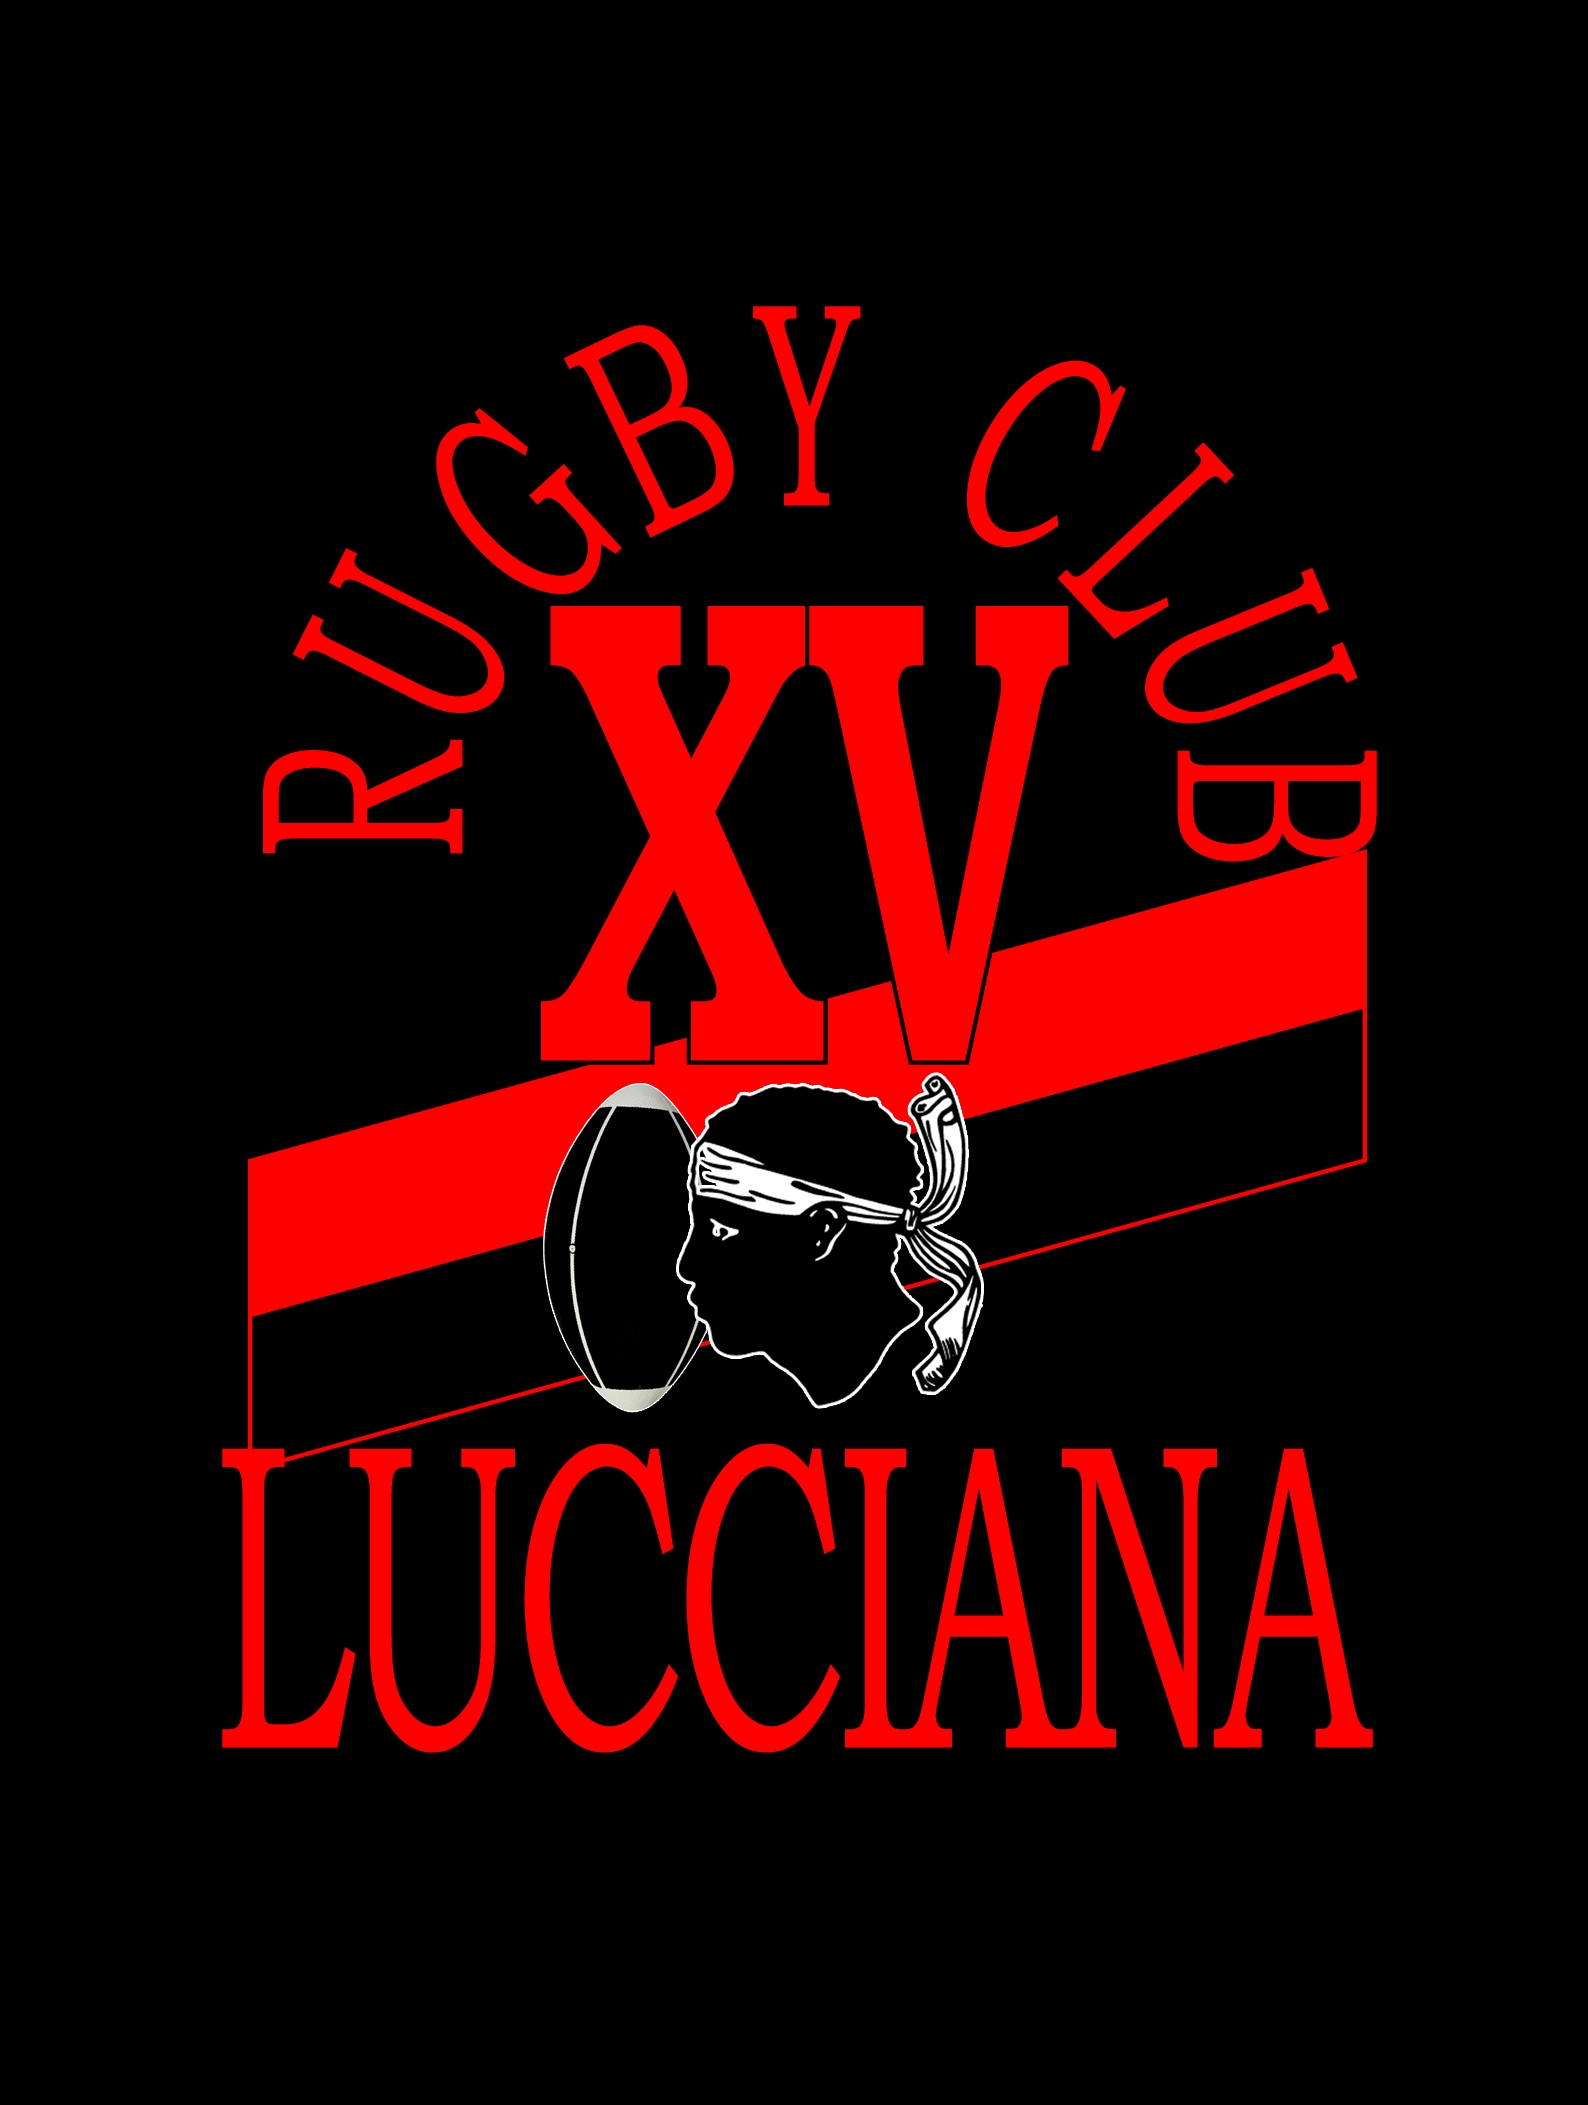 Lucciana Rugby Club